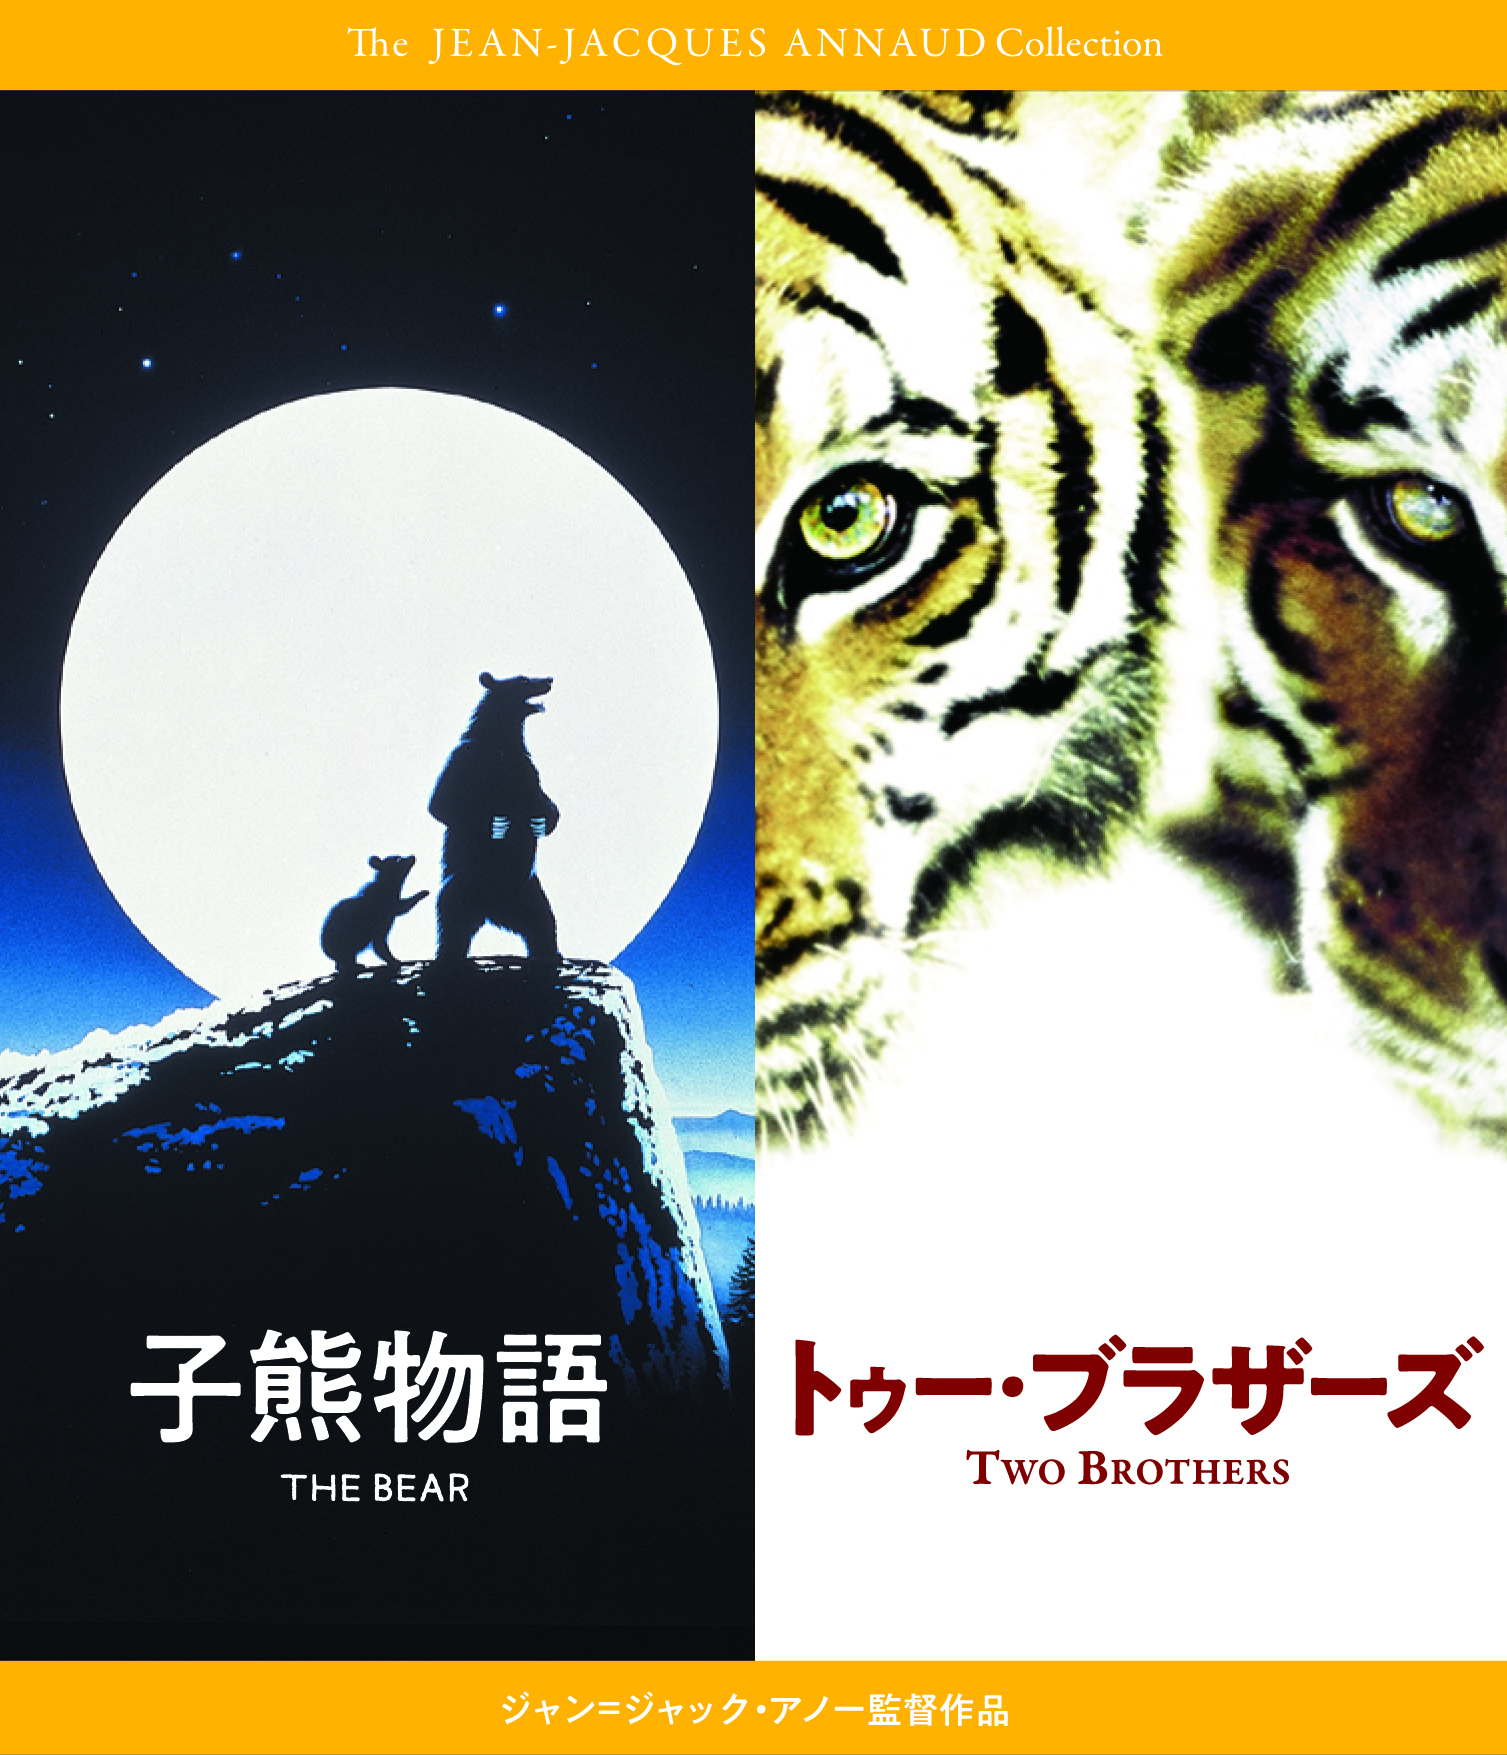 『子熊物語』『トゥー・ブラザーズ』 Blu-rayセット　ジャン=ジャック・アノー 